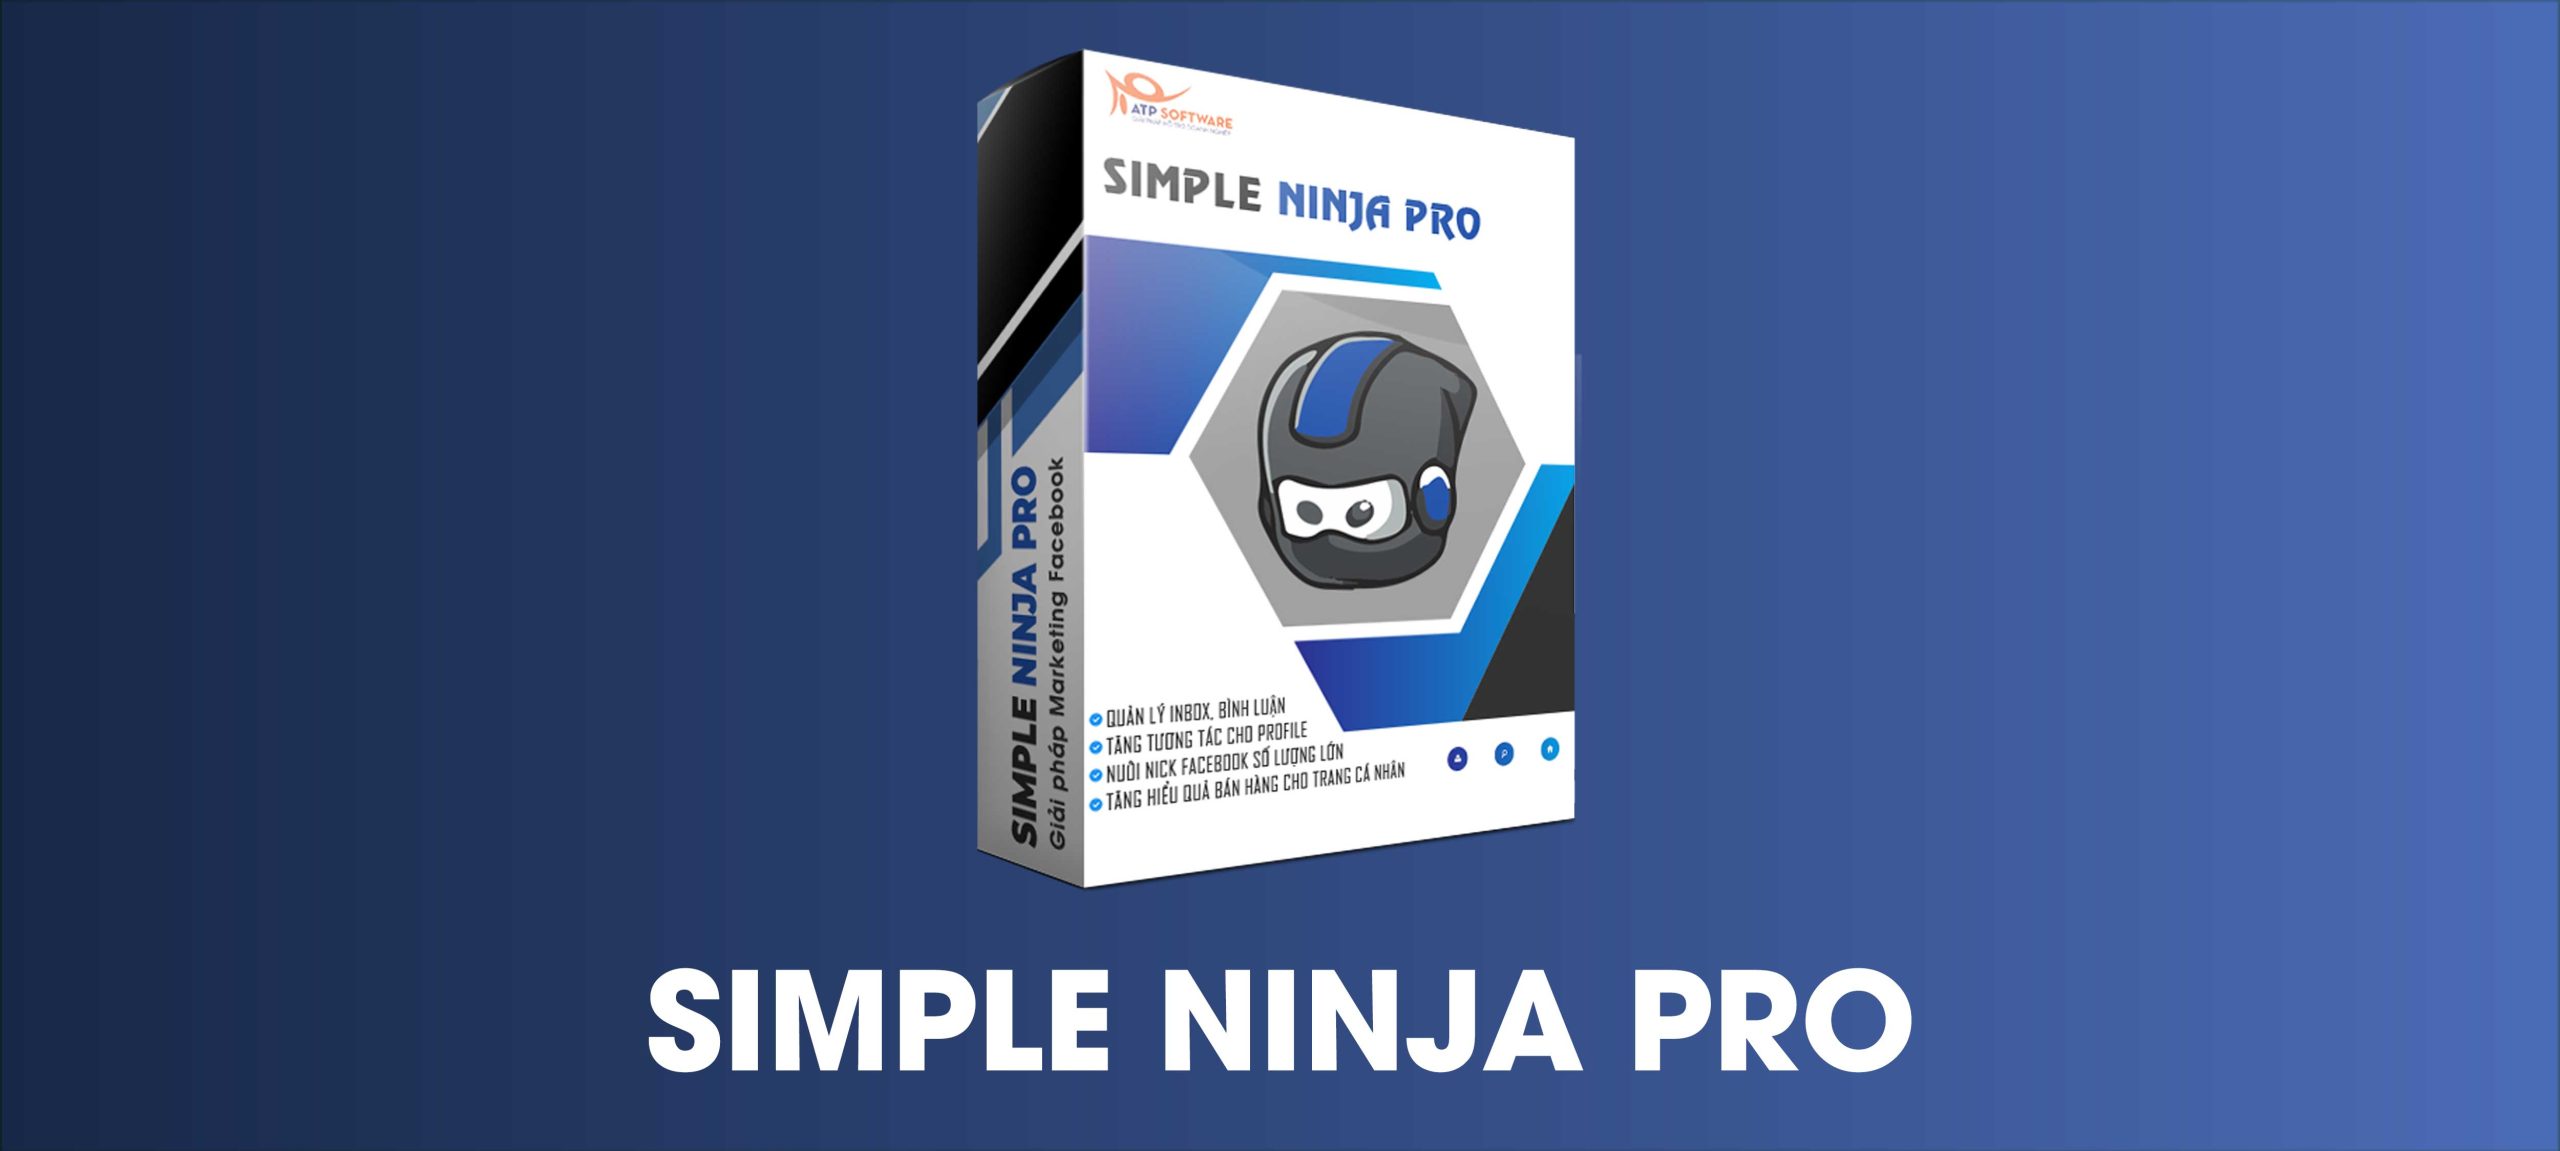 bg simple ninja pro scaled